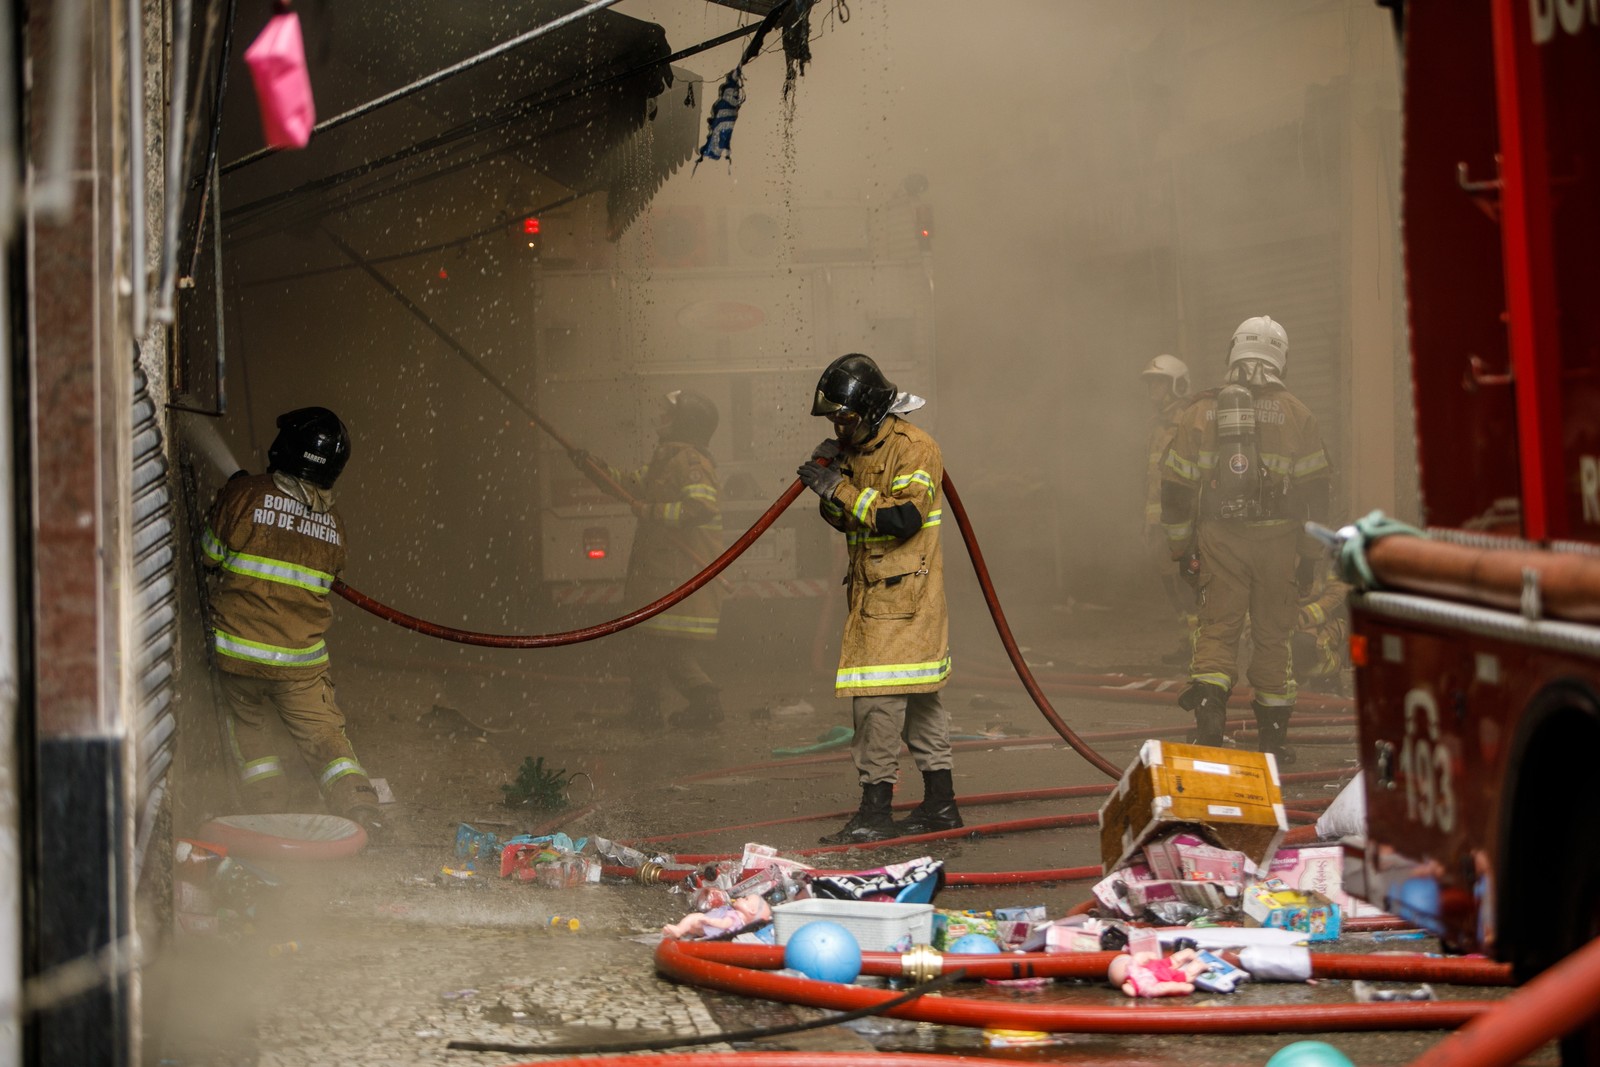 Bombeiros combatem incêndio que consumiu a loja Simões, no Saara, Centro do Rio — Foto: Brenno Carvalho/Agência O Globo